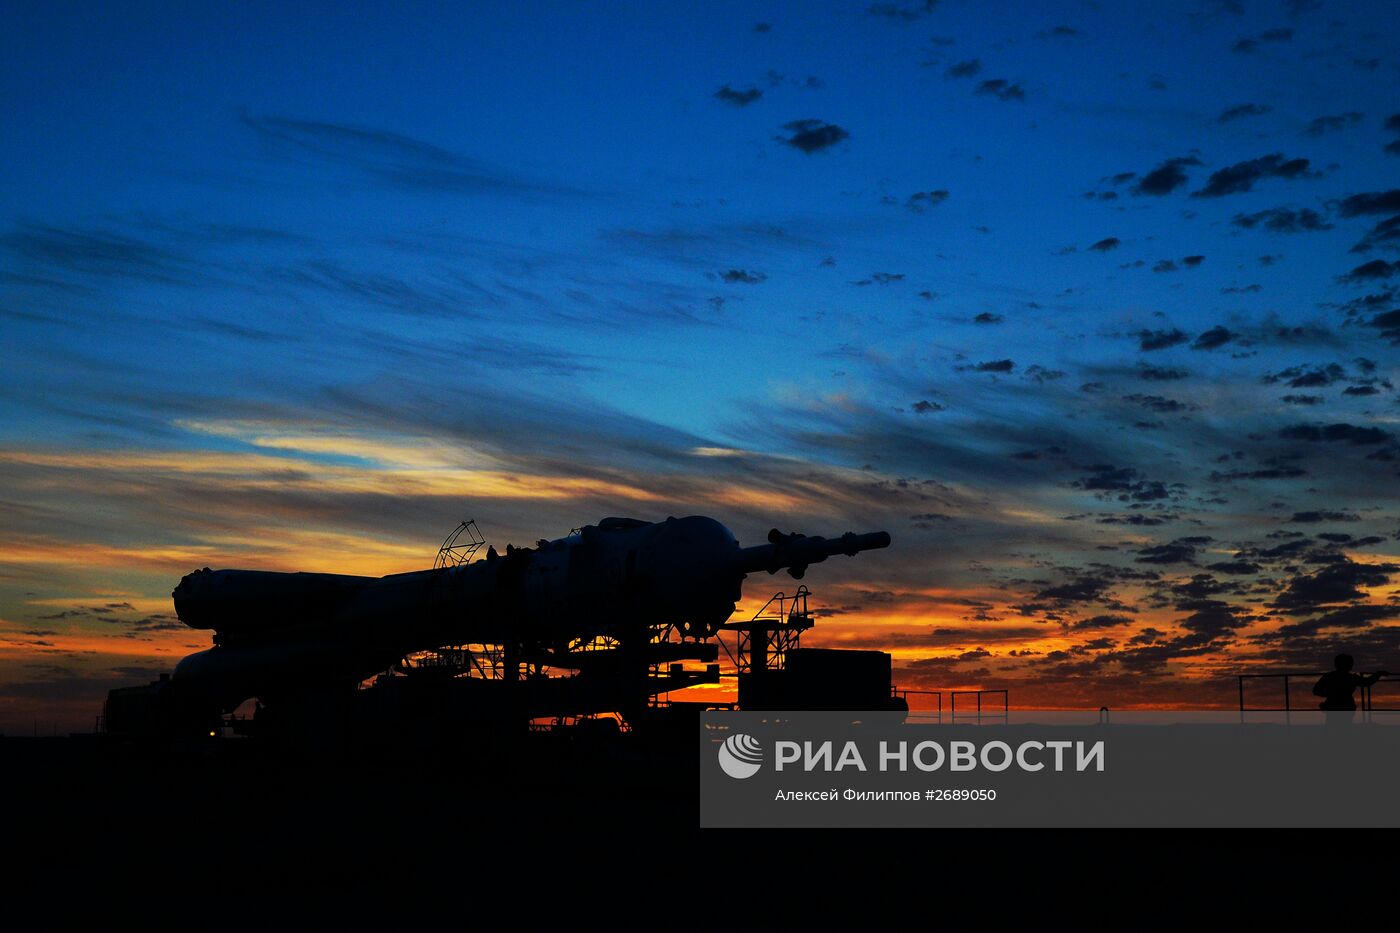 Вывоз и установка на старт РКН "Союз-ФГ" с транспортным пилотируемым кораблем "Союз ТМА-18М" на космодроме Байконур